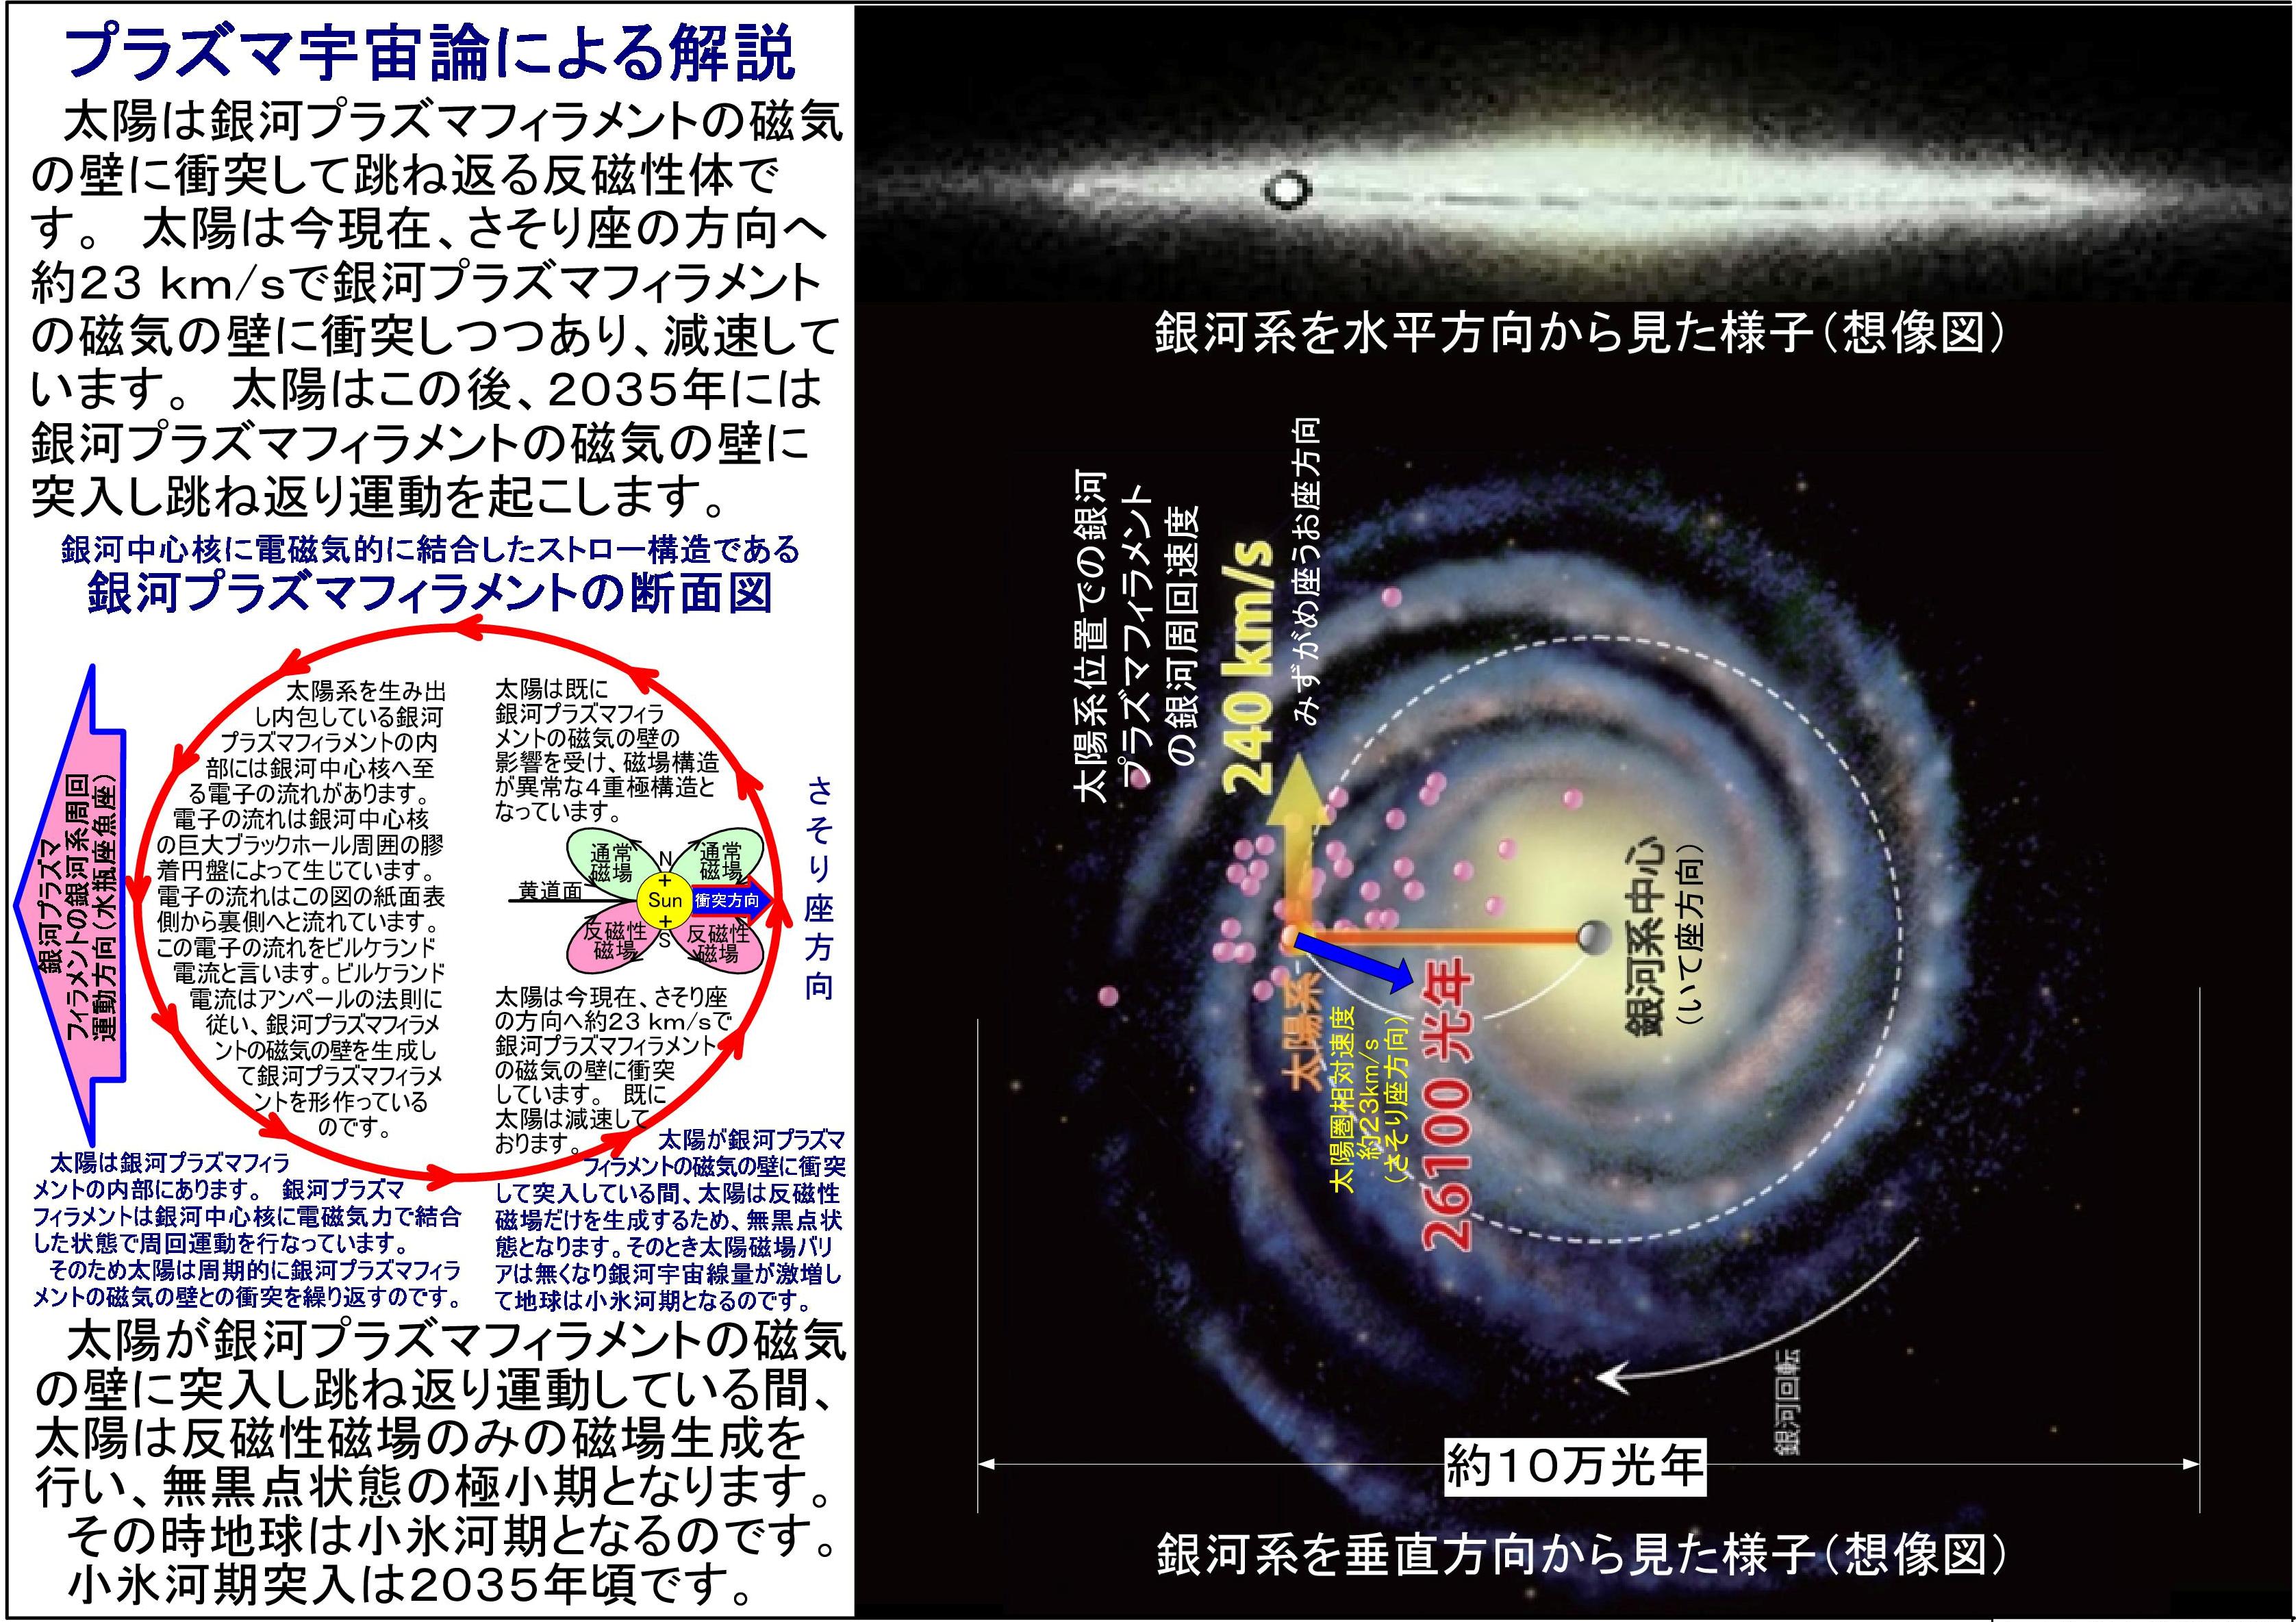 プラズマ宇宙論による反磁性体太陽の銀河磁場との衝突仮説TheCommentaryByPlasmaCosmology-2.jpg